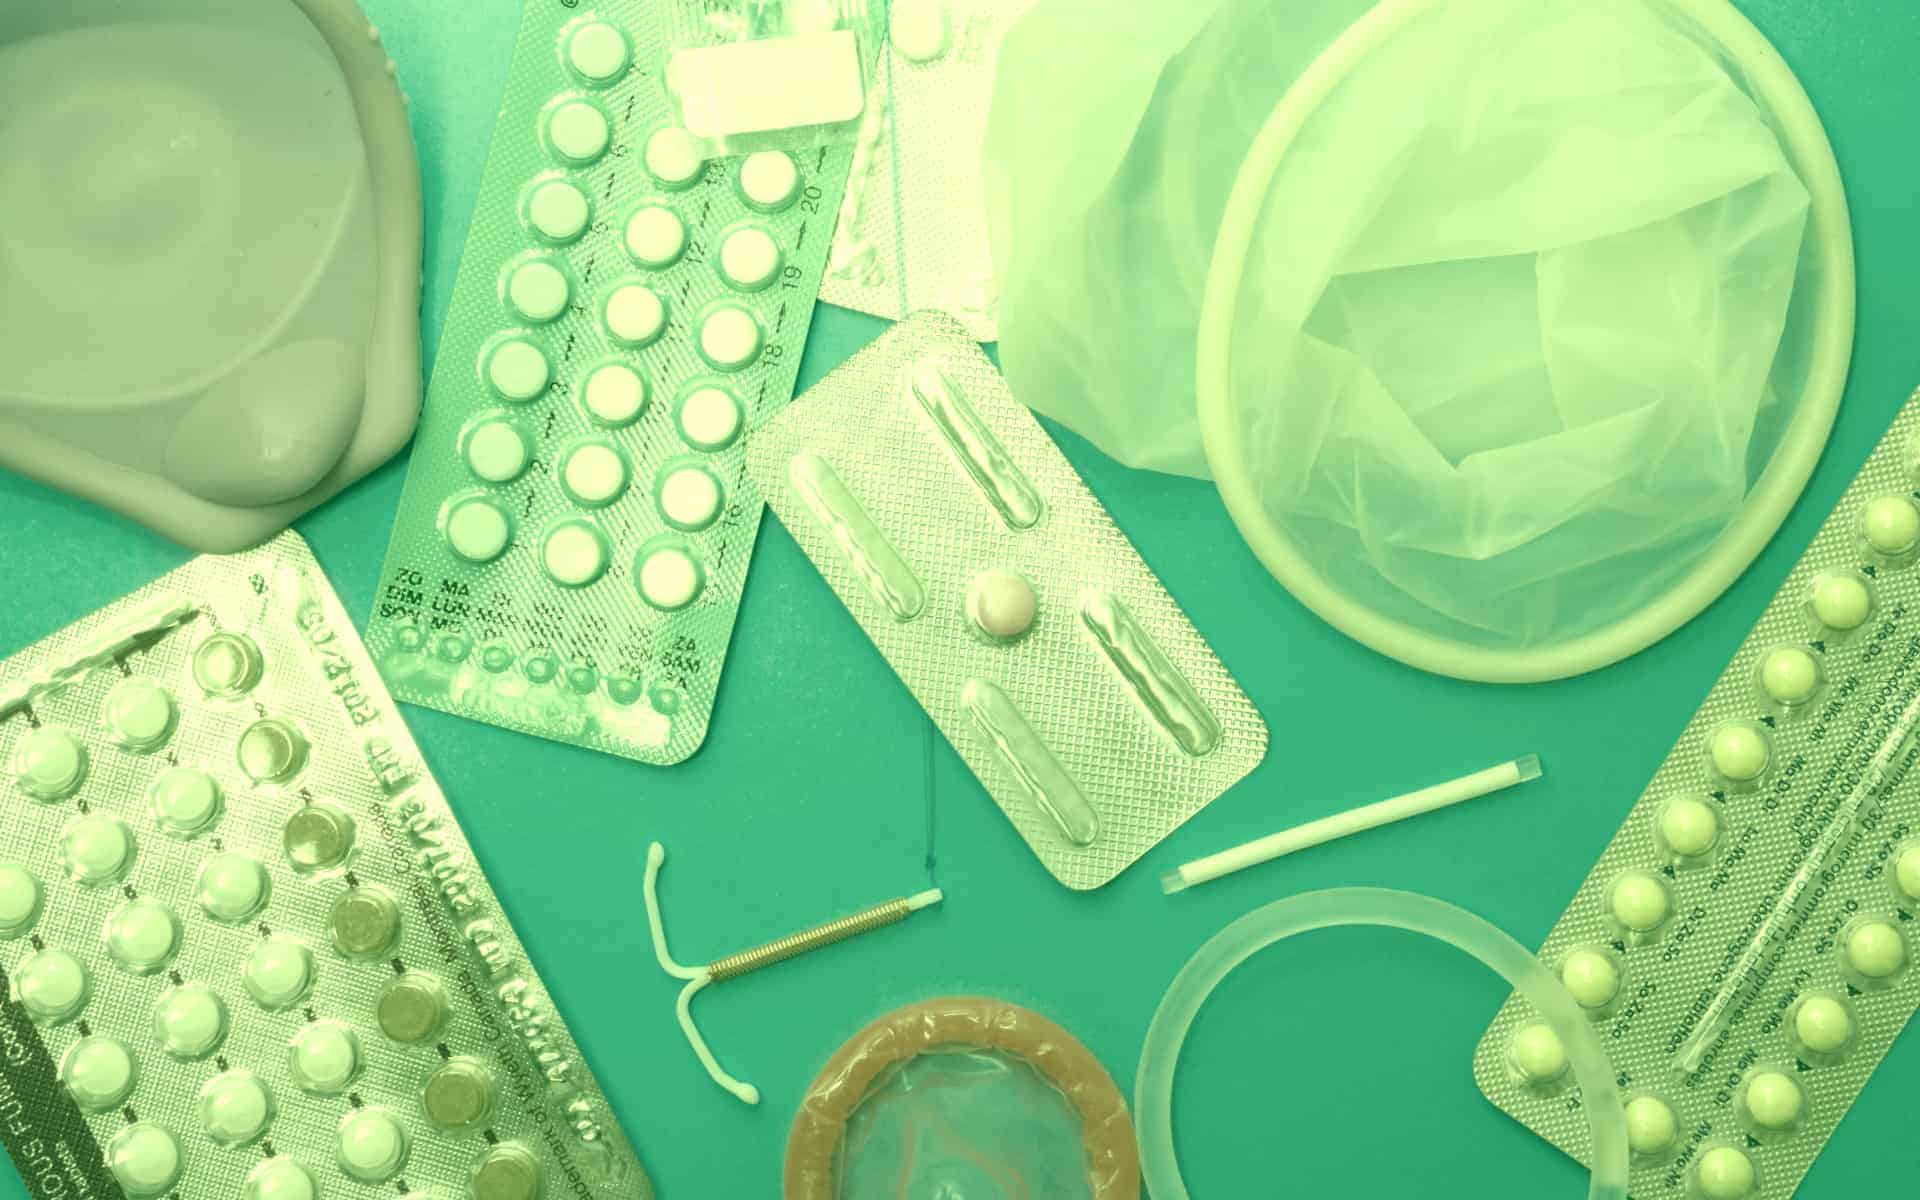 Varios métodos anticonceptivos.